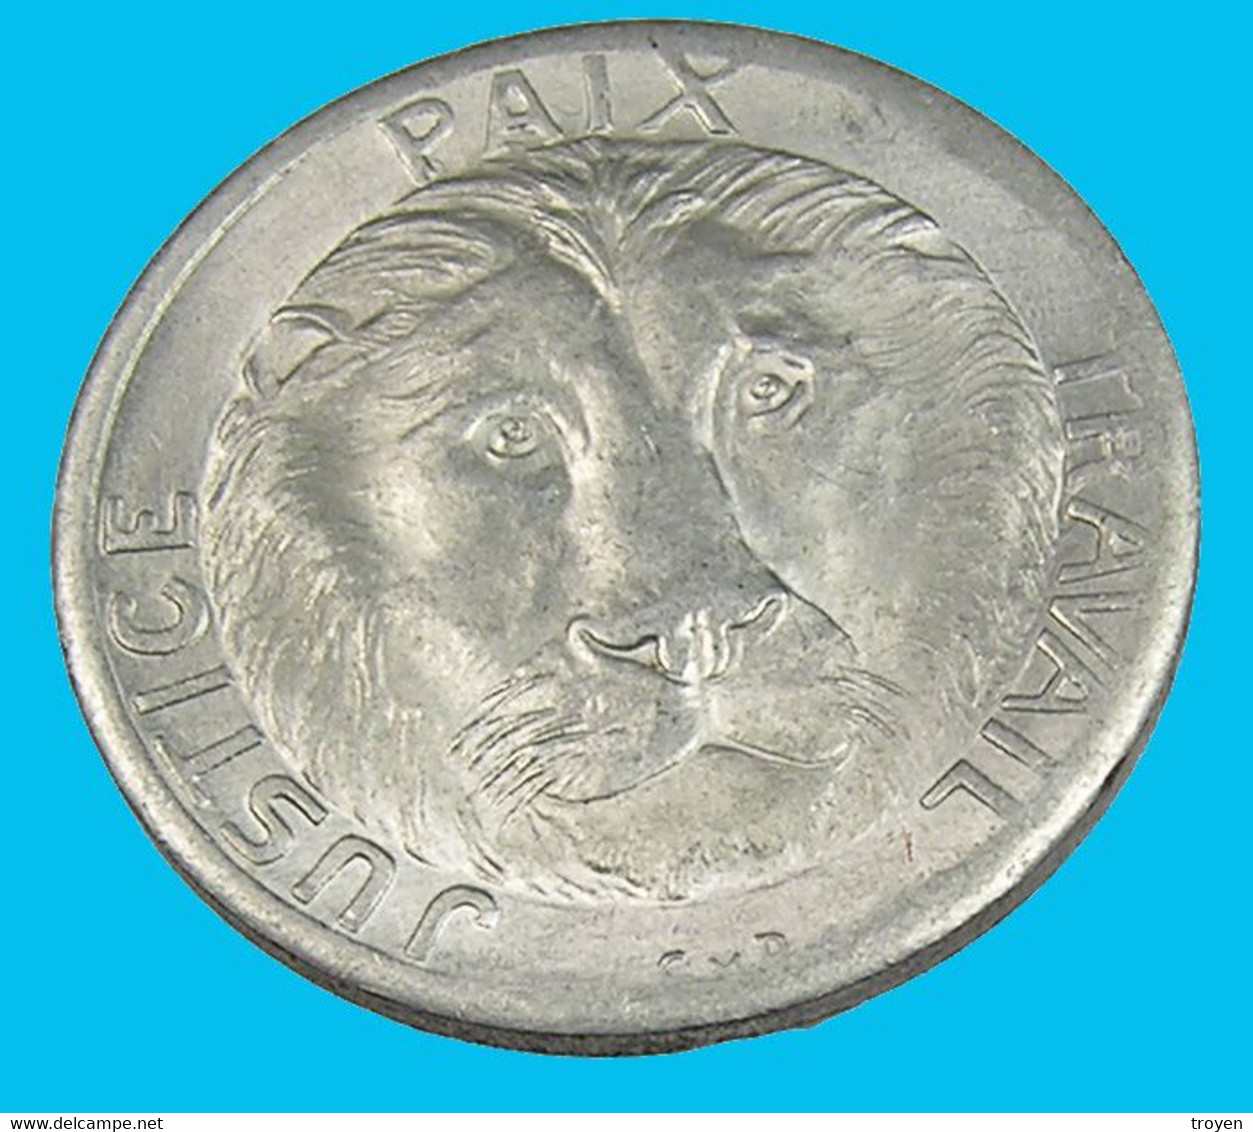 10 Francs - Congo - 1965 - Alu - TTB + - - Congo (Repubblica Democratica 1998)